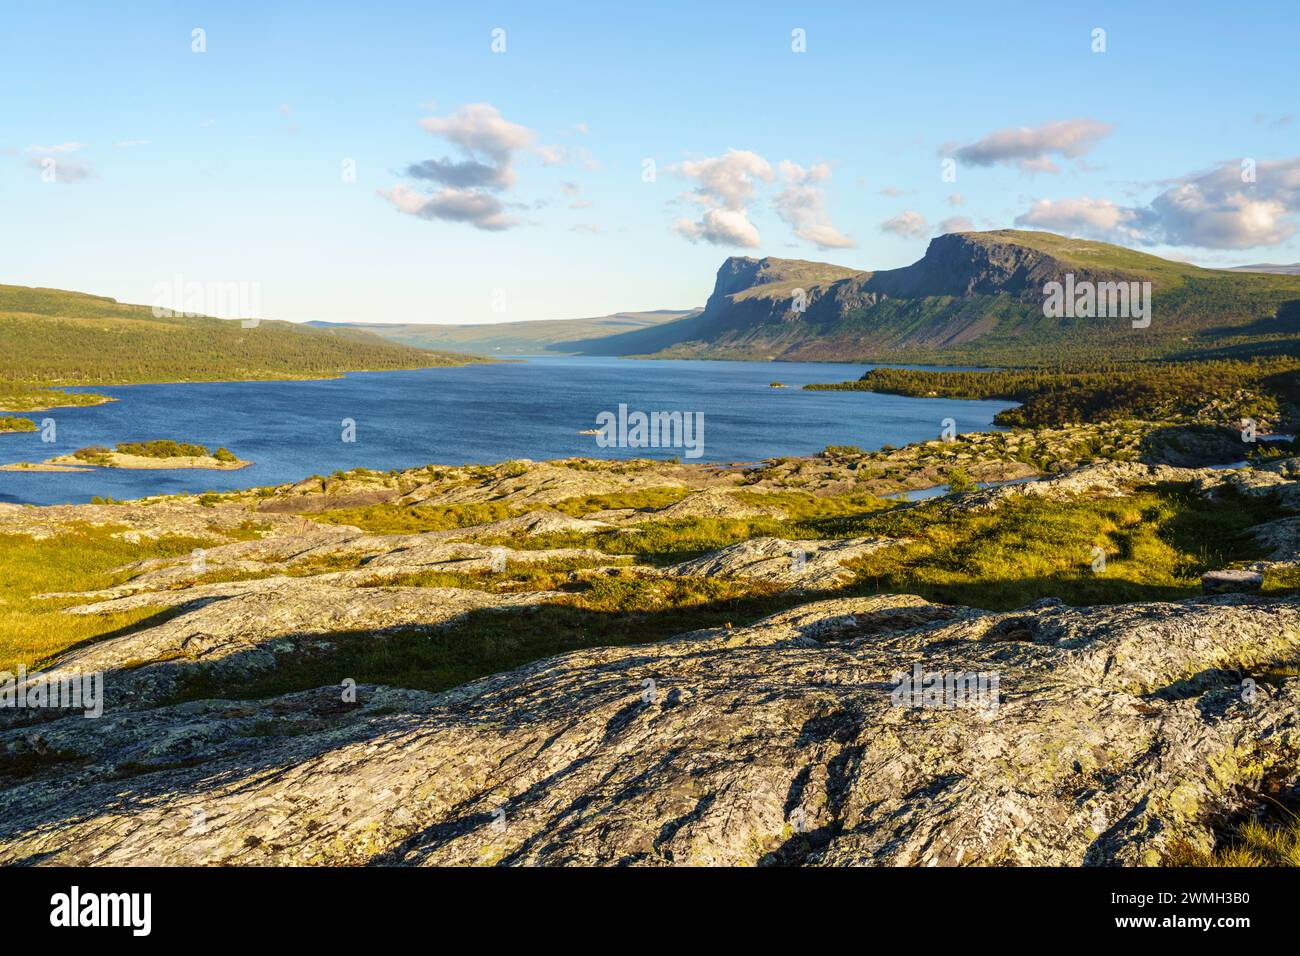 Sommerlandschaft im Nationalpark Stora sjöfallet im sonnigen Abendlicht mit Bergen und See, Gällivare County, Schwedisch Lappland, Schweden Stockfoto